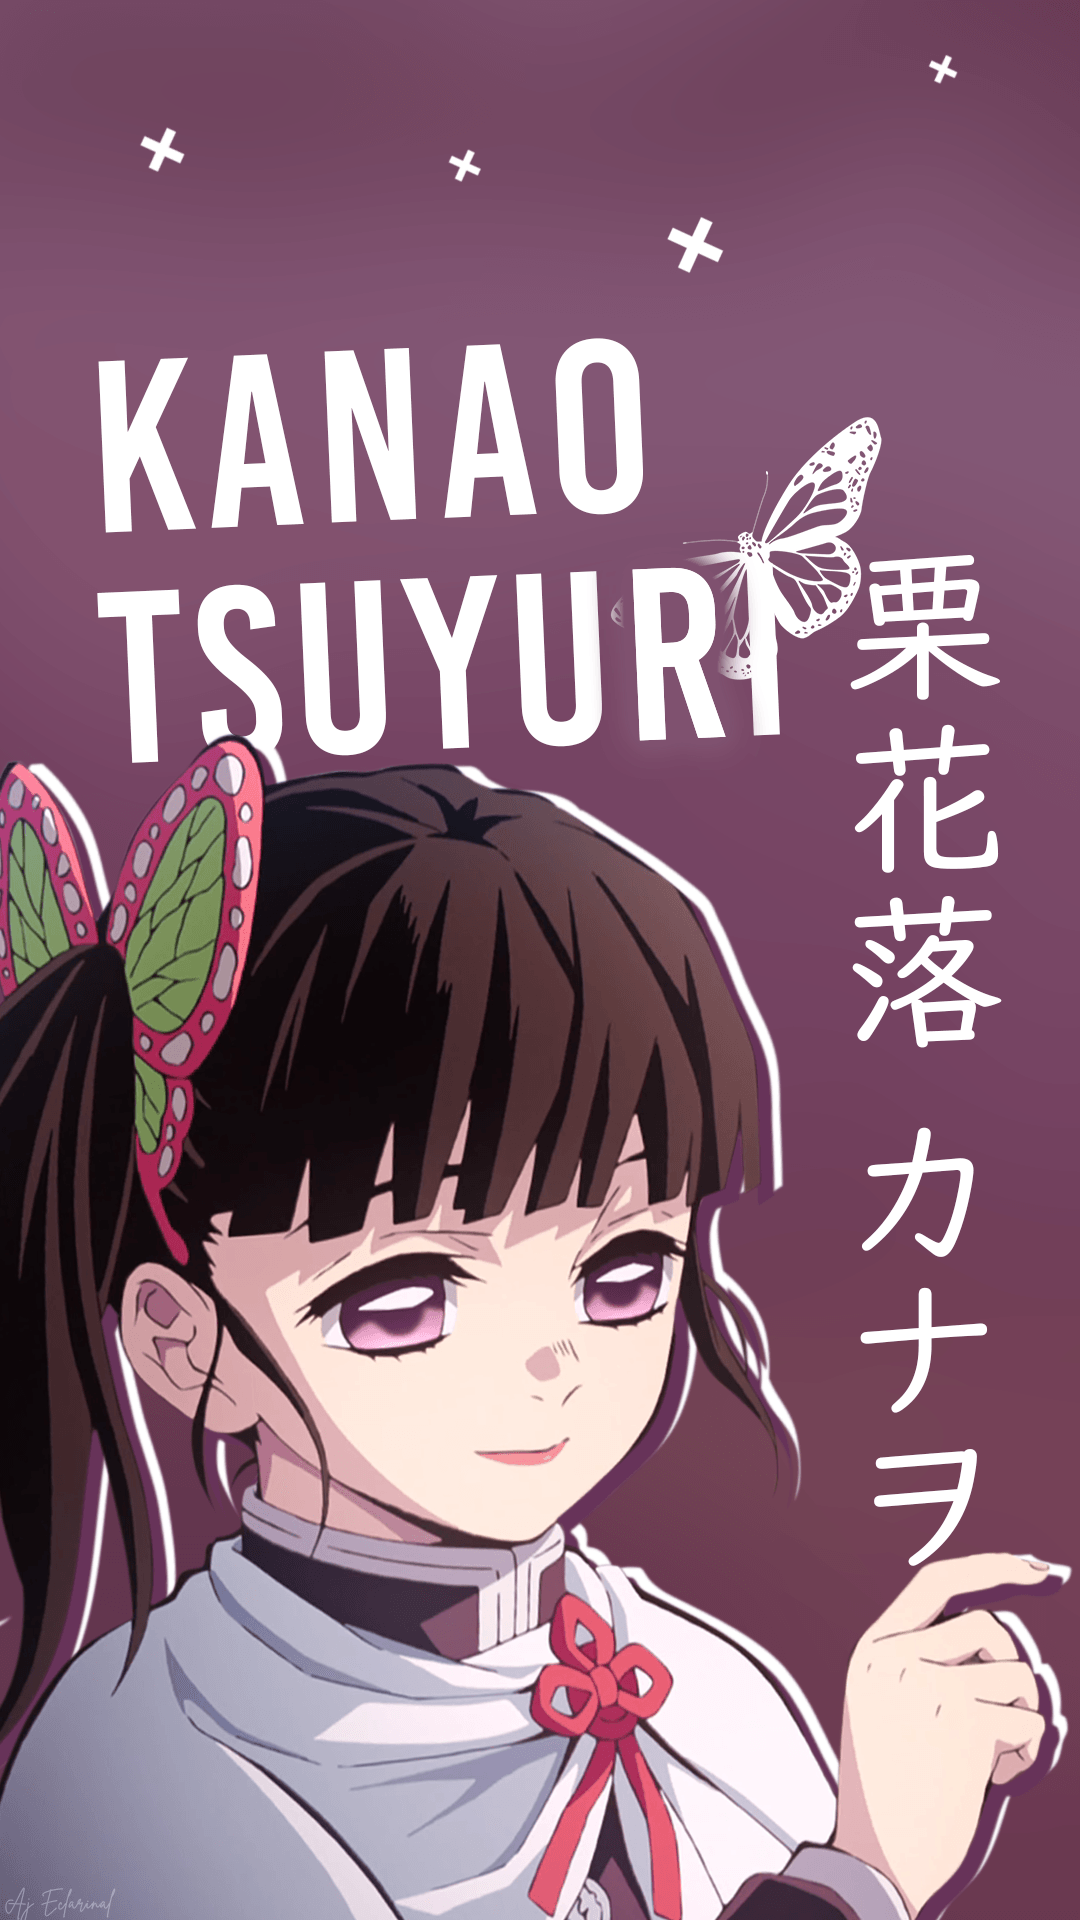 Kanao Tsuyuri [Kimetsu no Yaiba] (1080x1920)